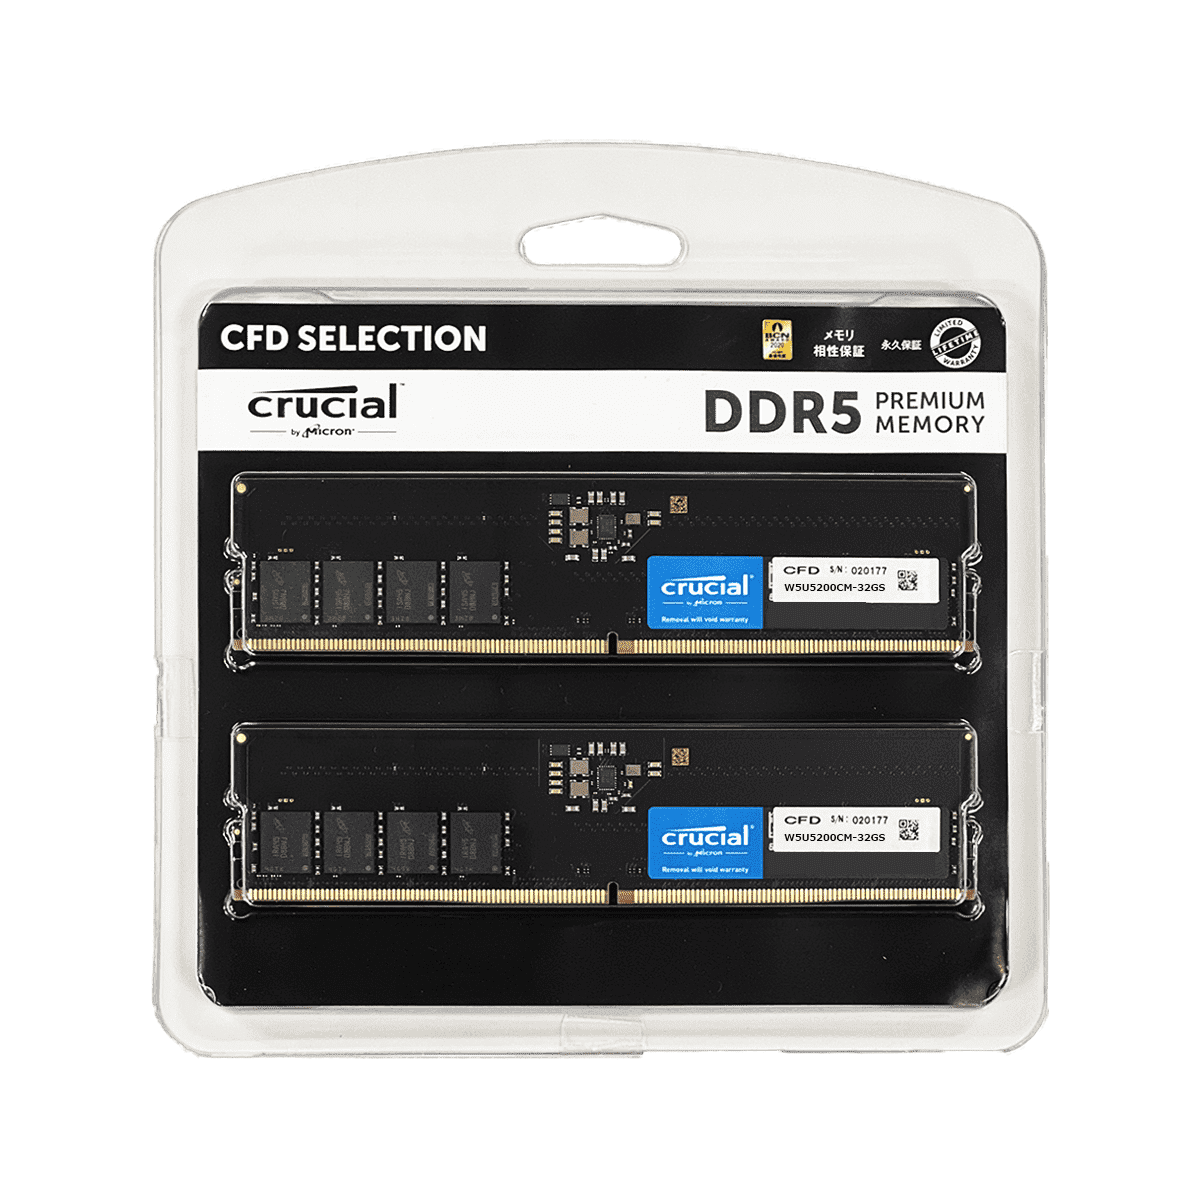 CFD Selection DDR5-5200 デスクトップ用メモリ 2枚組 32GB W5U5200CM-32GS